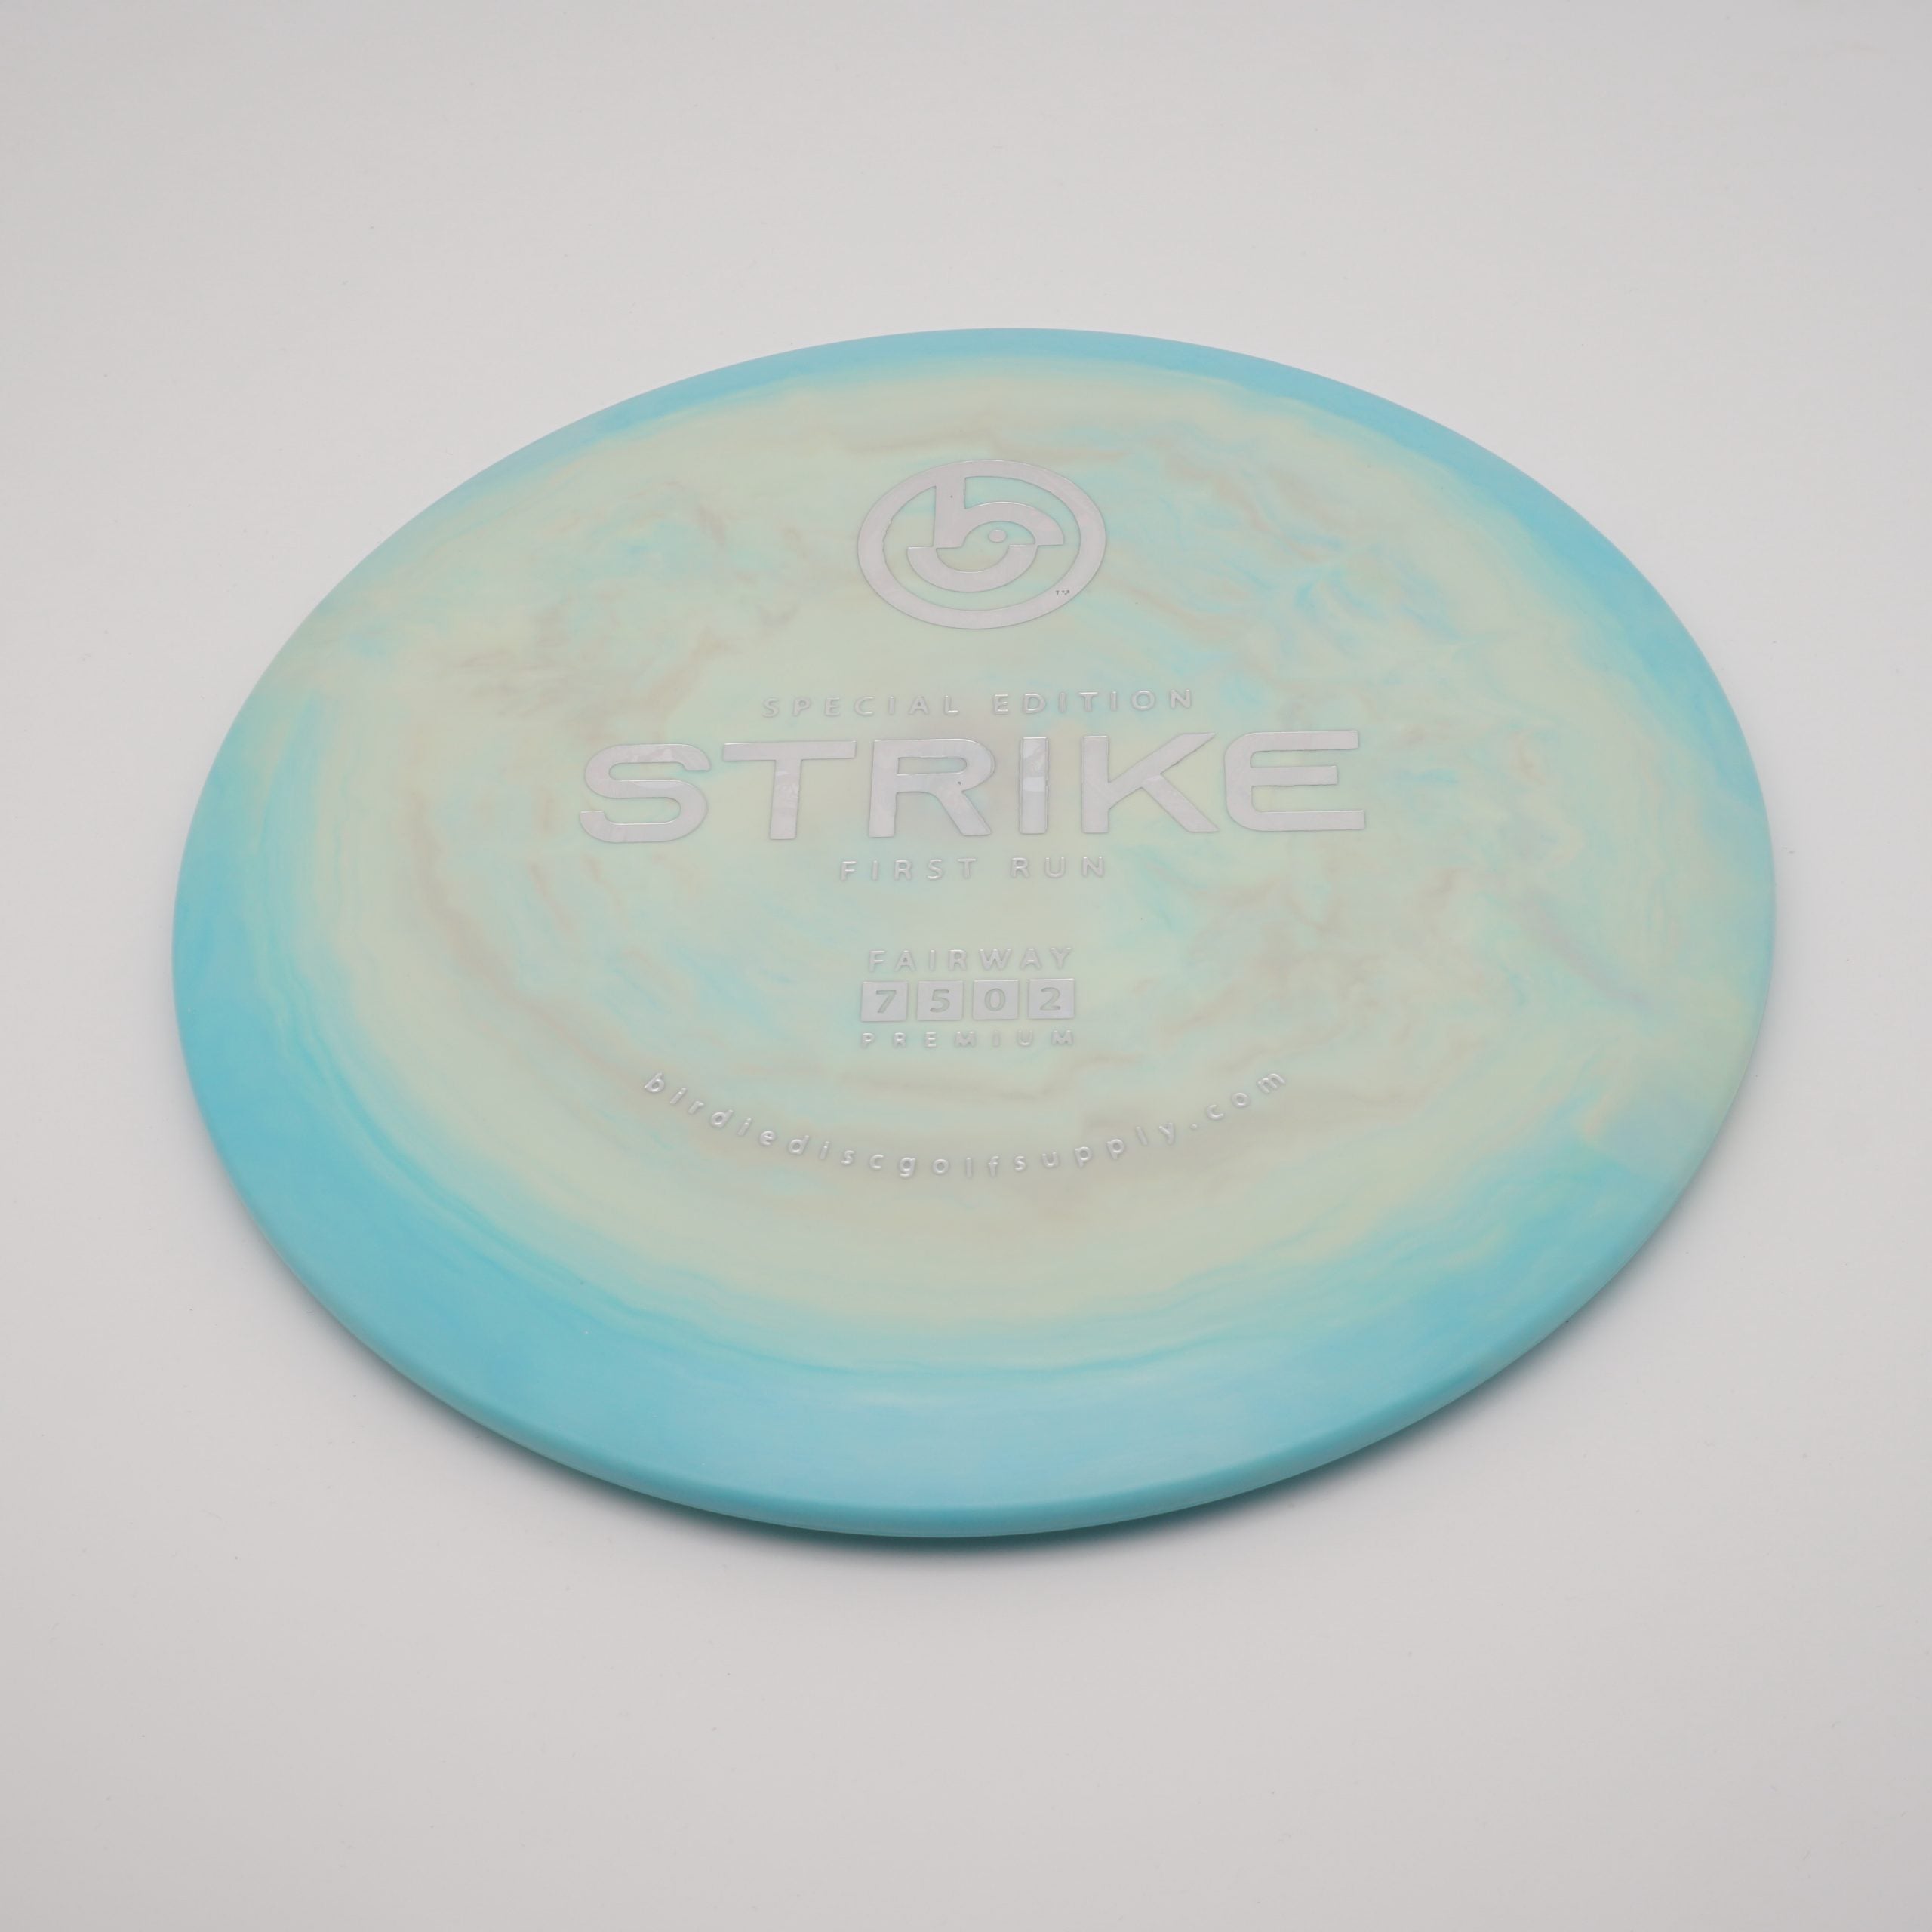 Birdie Disc Golf Supply | Premium Blend | Strike - First Run - SE